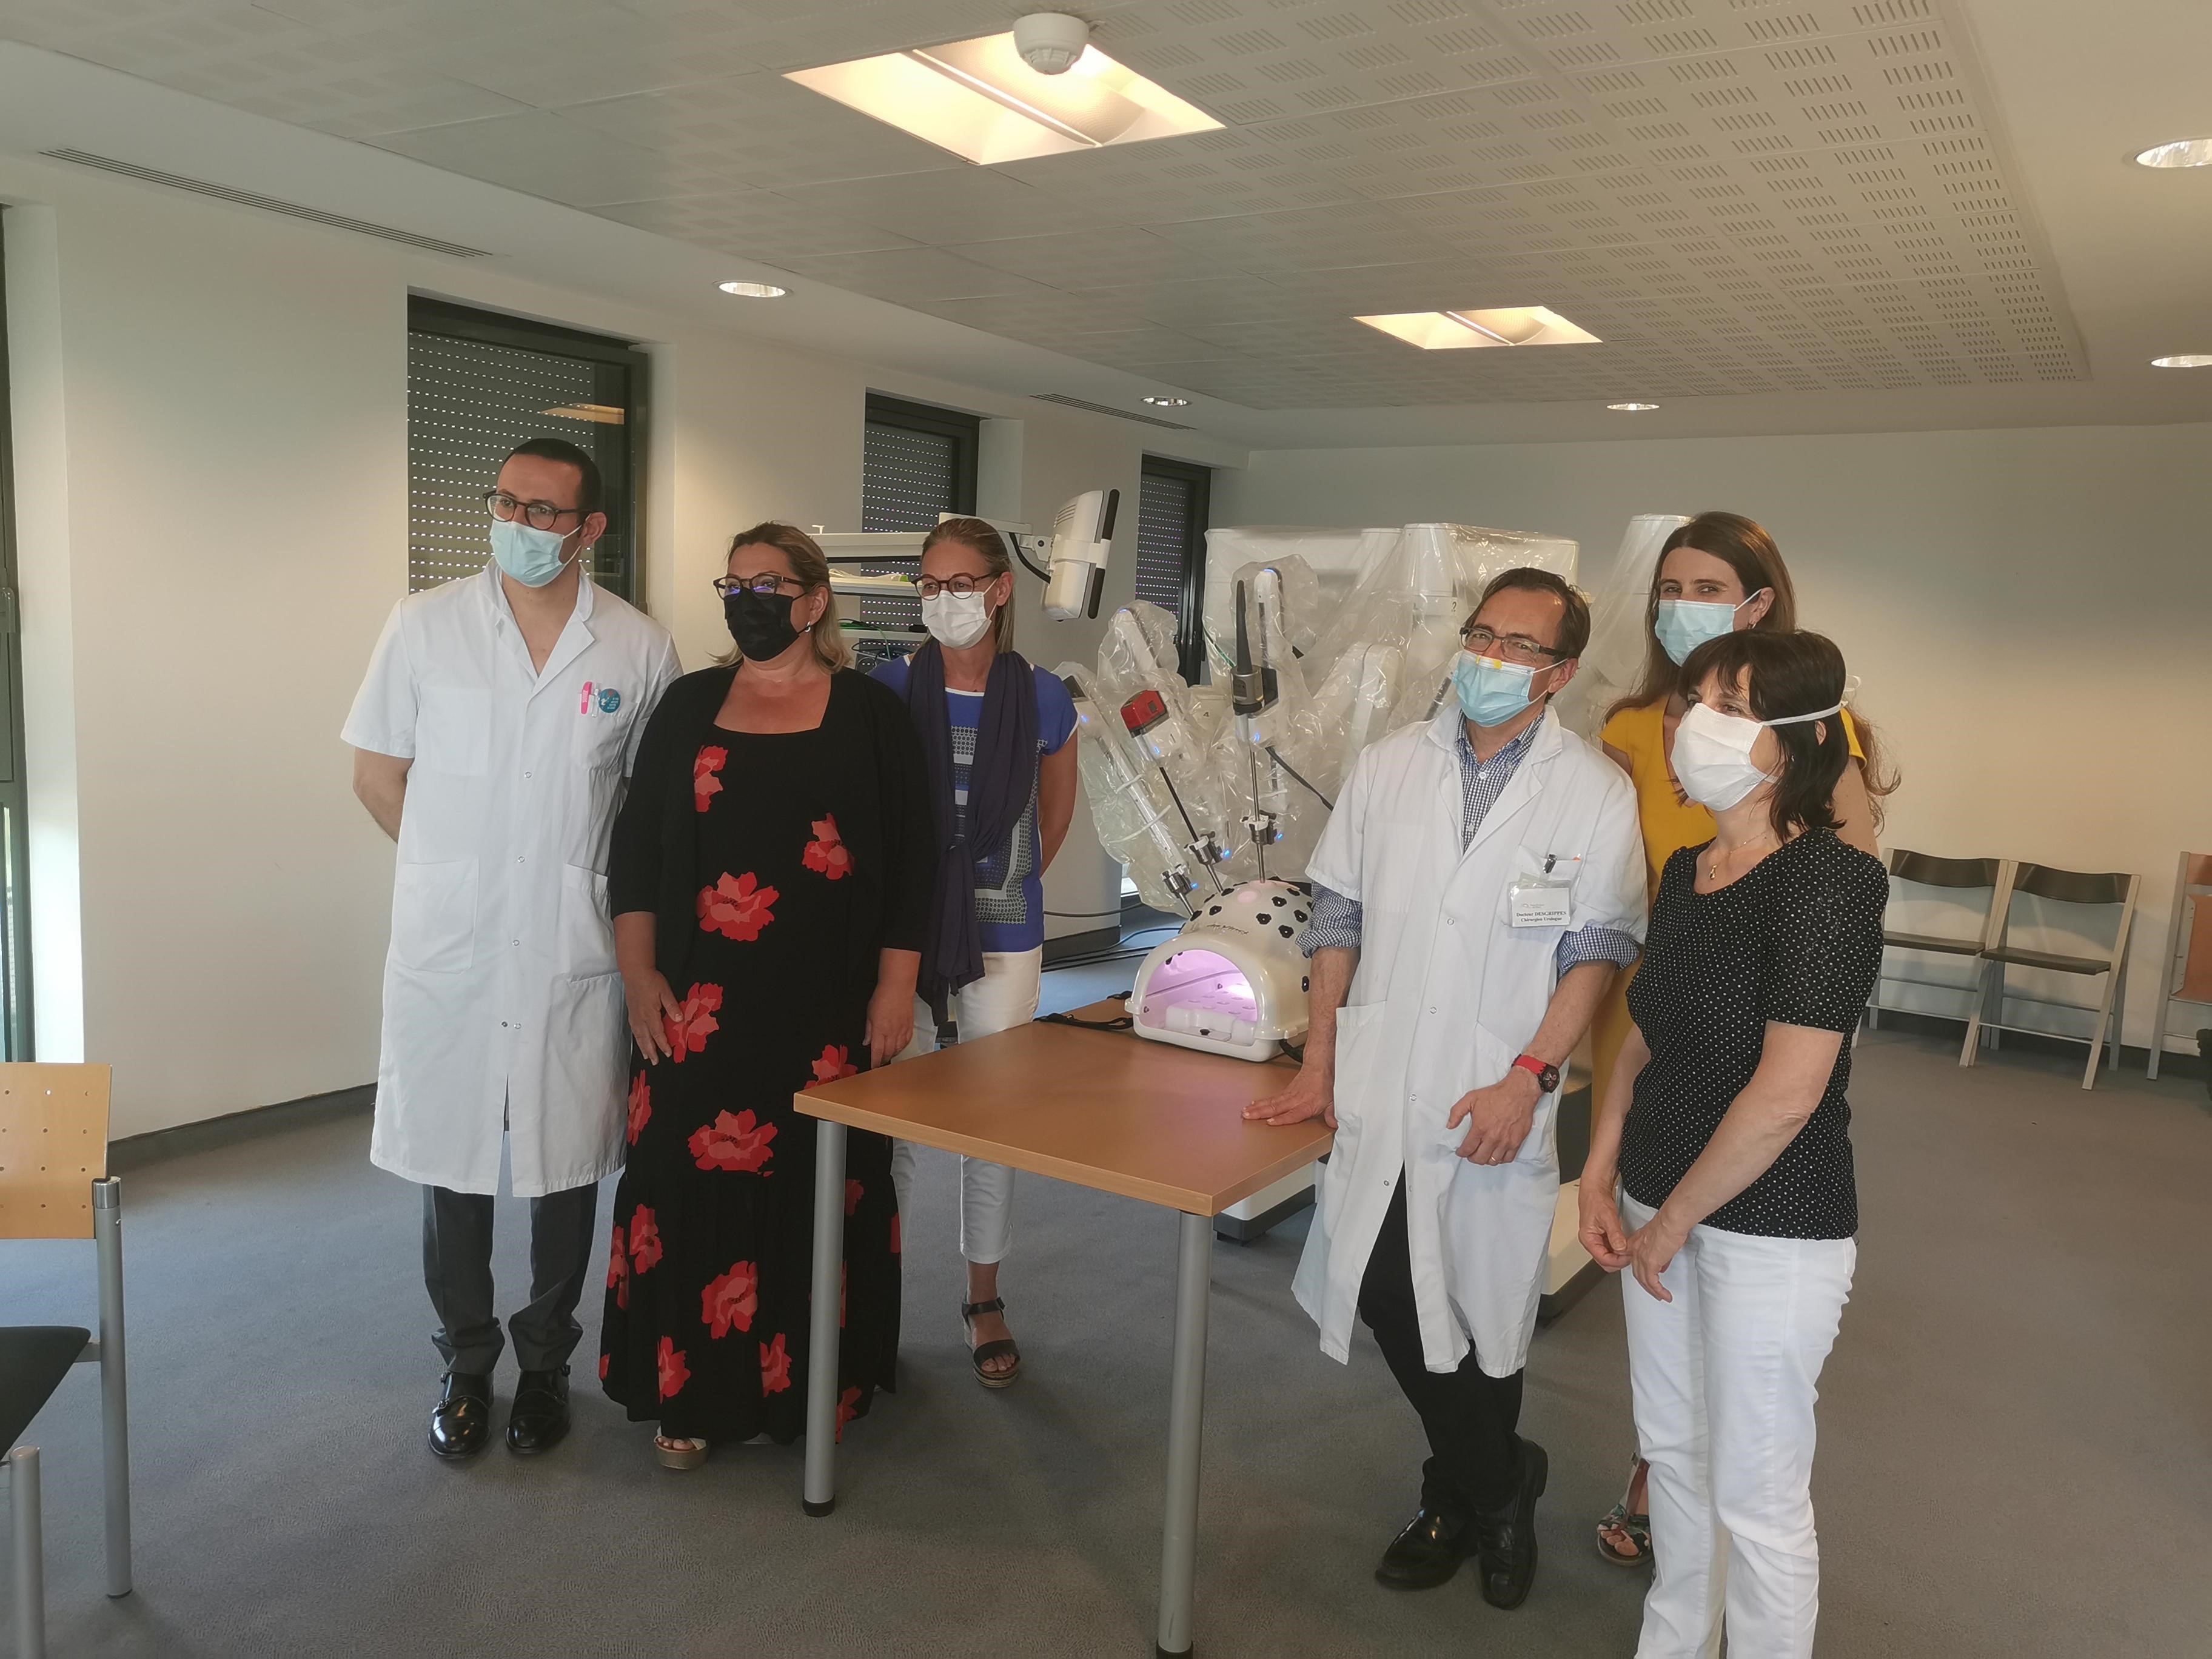 La Polyclinique de Blois investit dans un robot chirurgical dernière